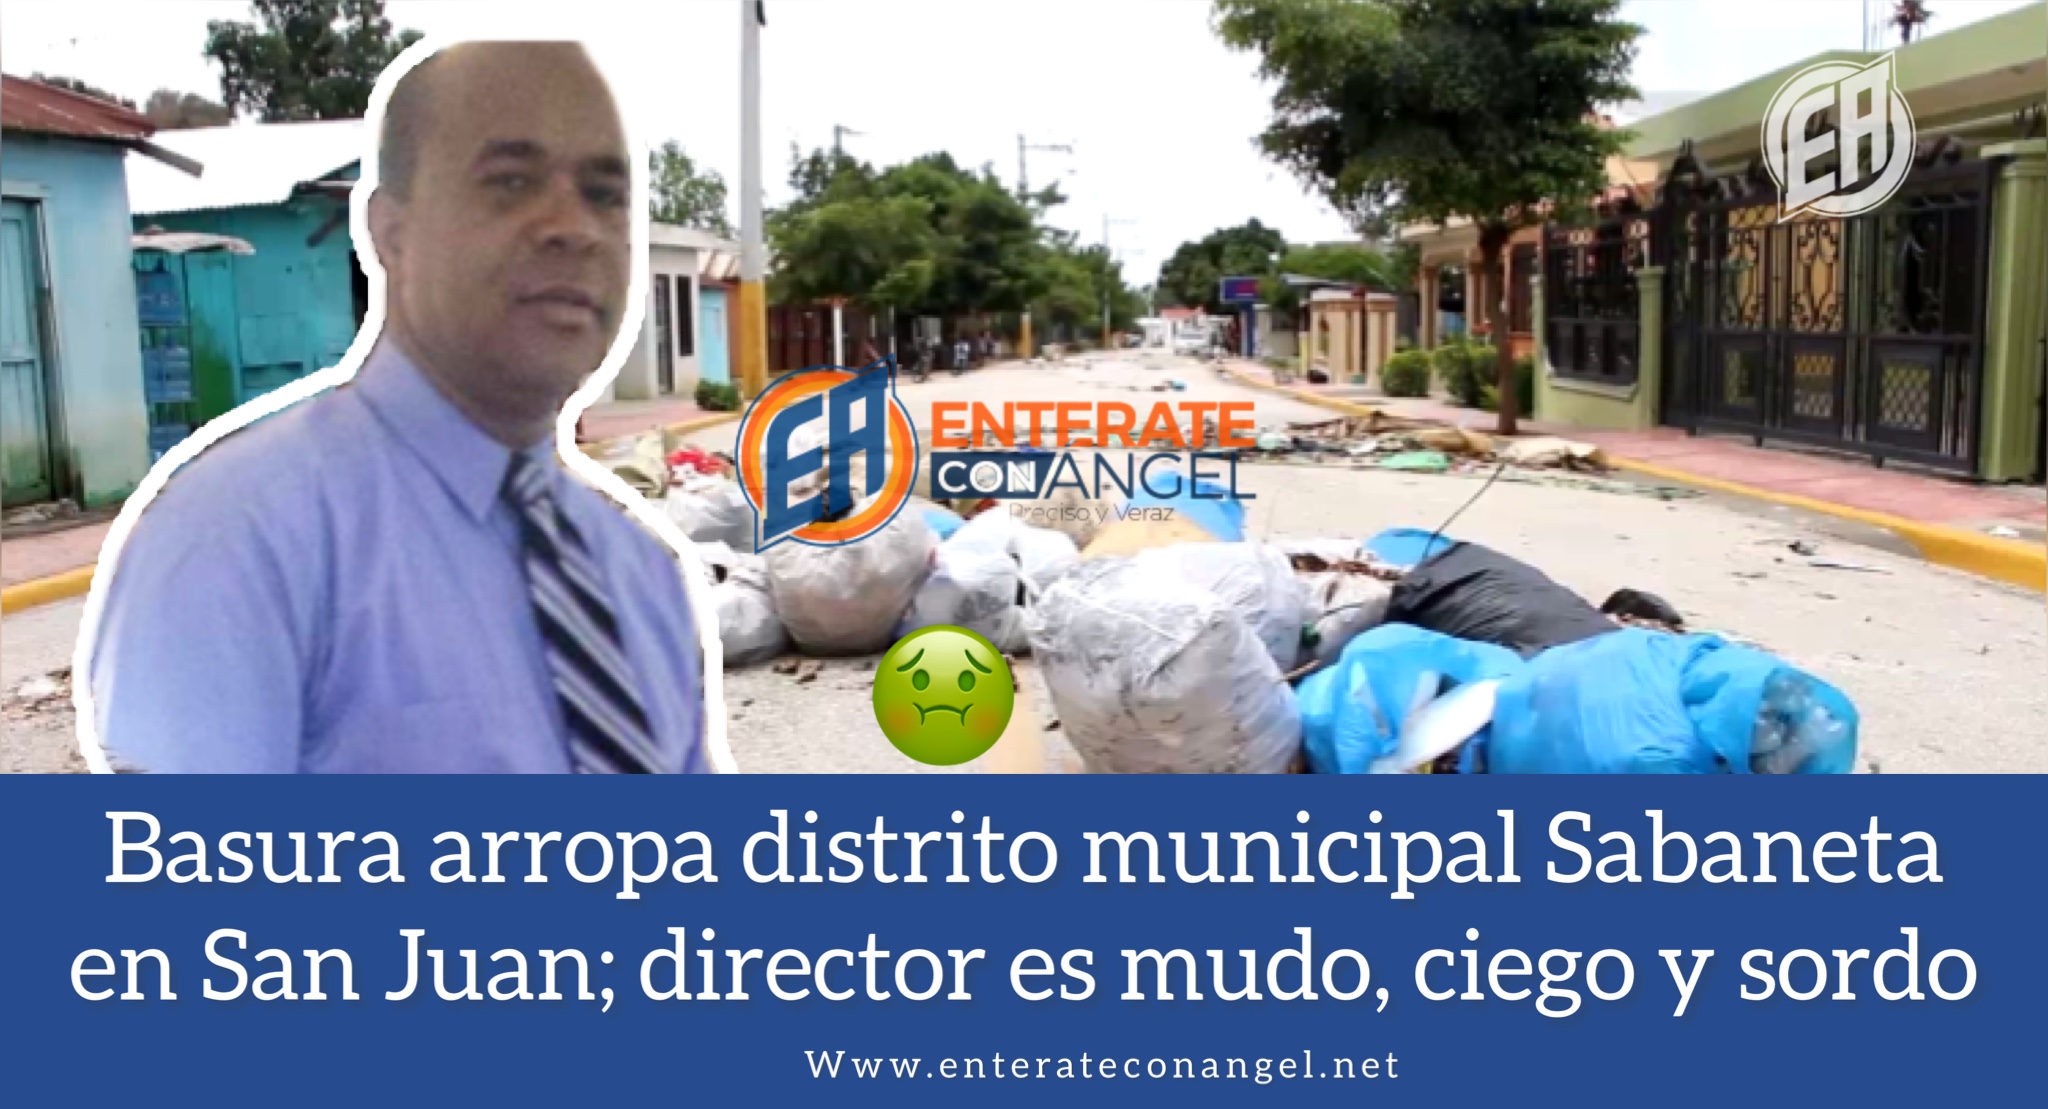 Basura adorna el distrito municipal Sabaneta en San Juan; director es mudo, ciego y sordo